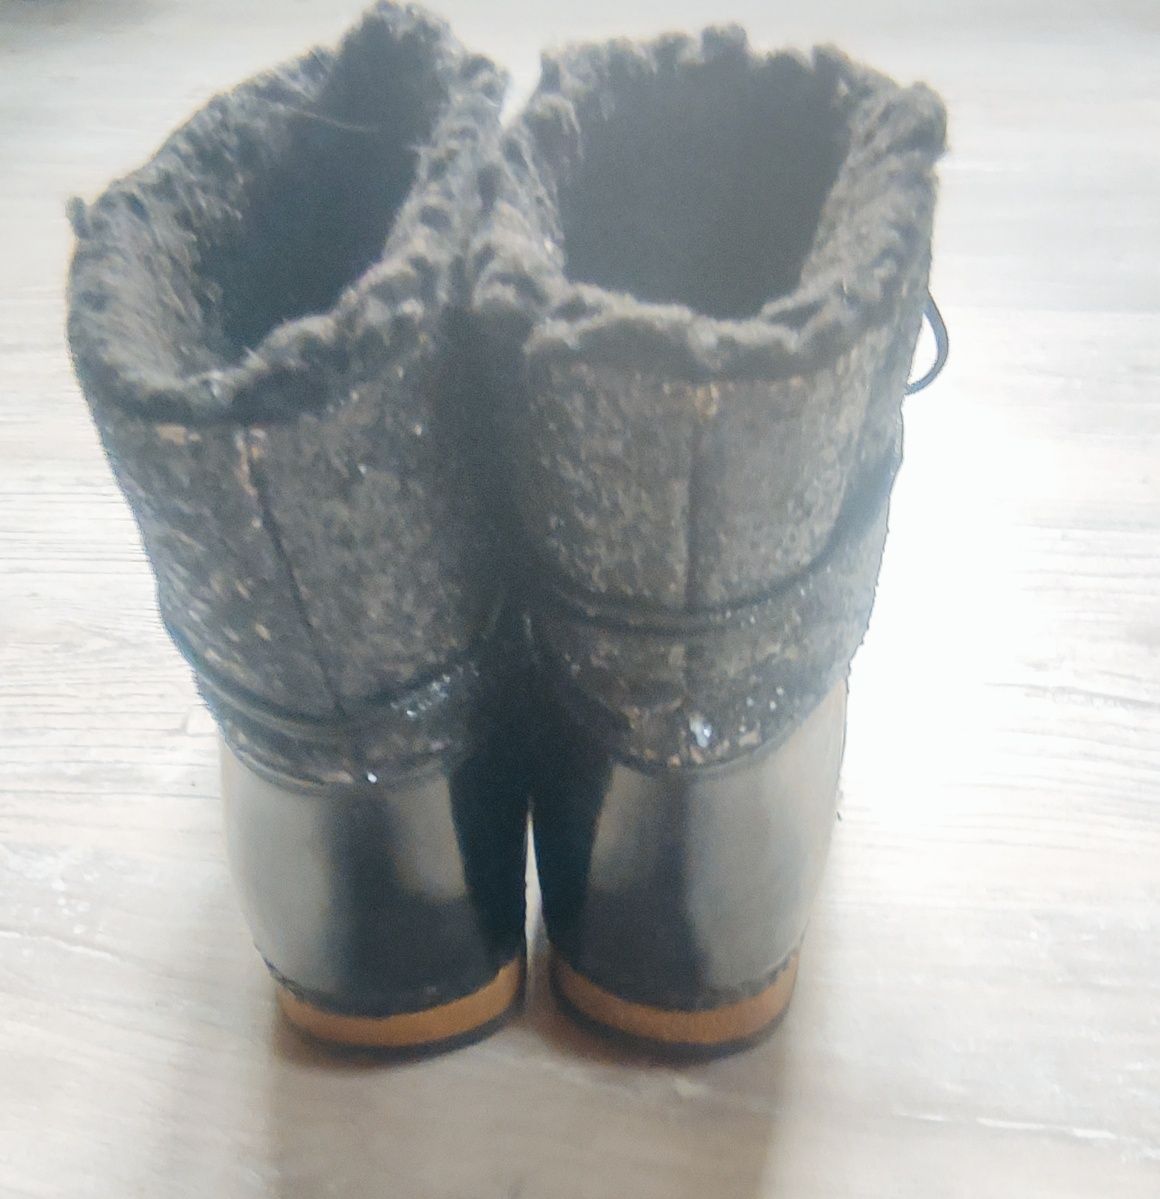 Śniegowce czarne, brokatowe, Ideal shoes, rozmiar 39.